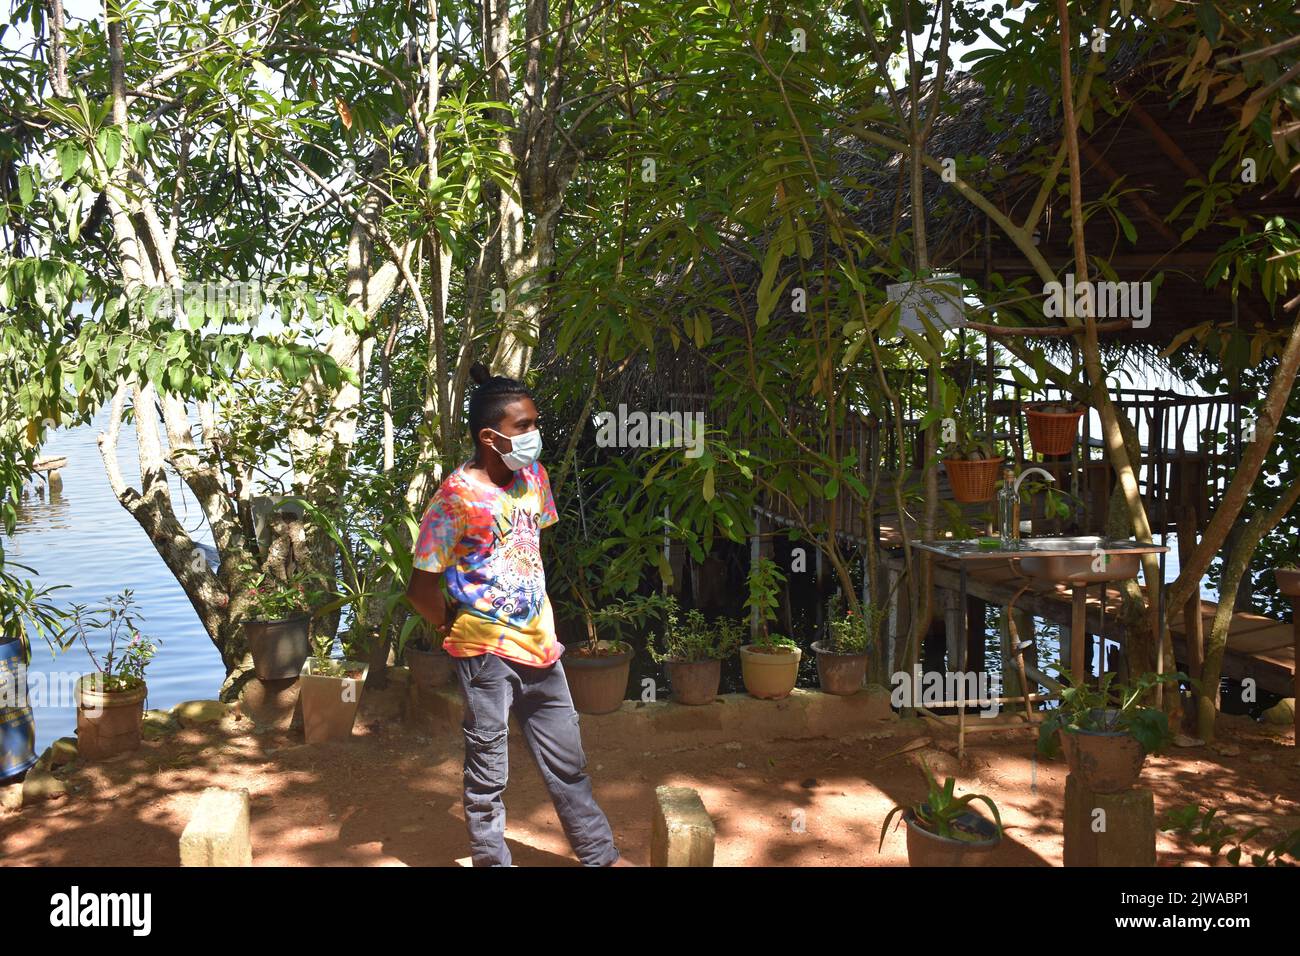 Isla Canela está situado en el Madhu Ganga está situado hacia el sur de Sri Lanka. El islote está habitado por la familia del cinamomo G. H. Premadasa, quien tiene la amabilidad de explicar a los visitantes cómo pelar la canela para la producción de aceite de canela. La gente puede tener una canela mezcla de té y la canela de la compra de la más alta calidad aquí. La canela es una especia que proviene de la corteza interior del árbol tropical Cinnamomum, se vende como hojas rodadas (ramitas de canela) o se muele en un polvo fino. Sri Lanka. Foto de stock